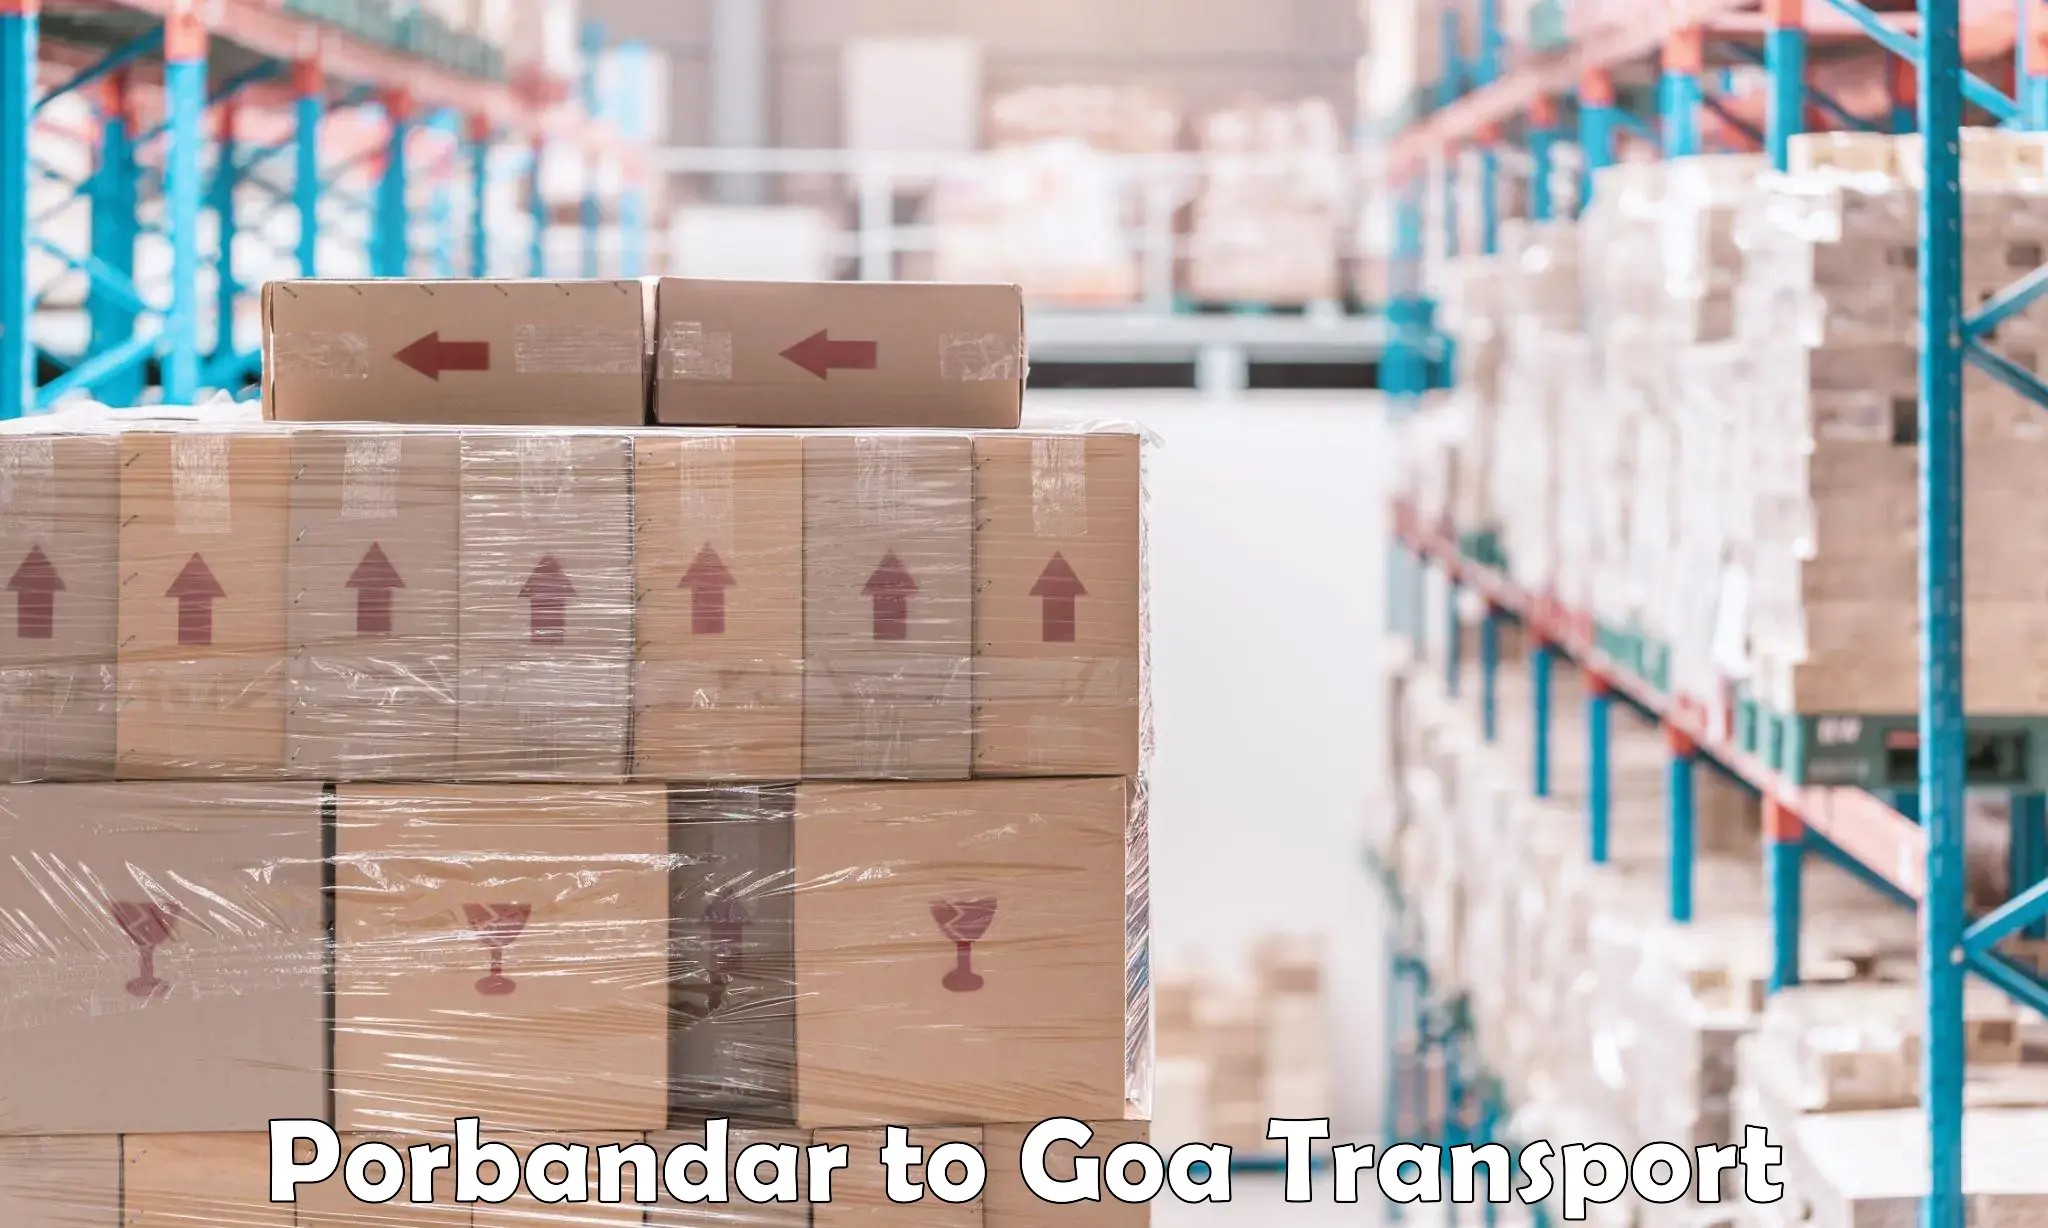 Nearest transport service in Porbandar to Goa